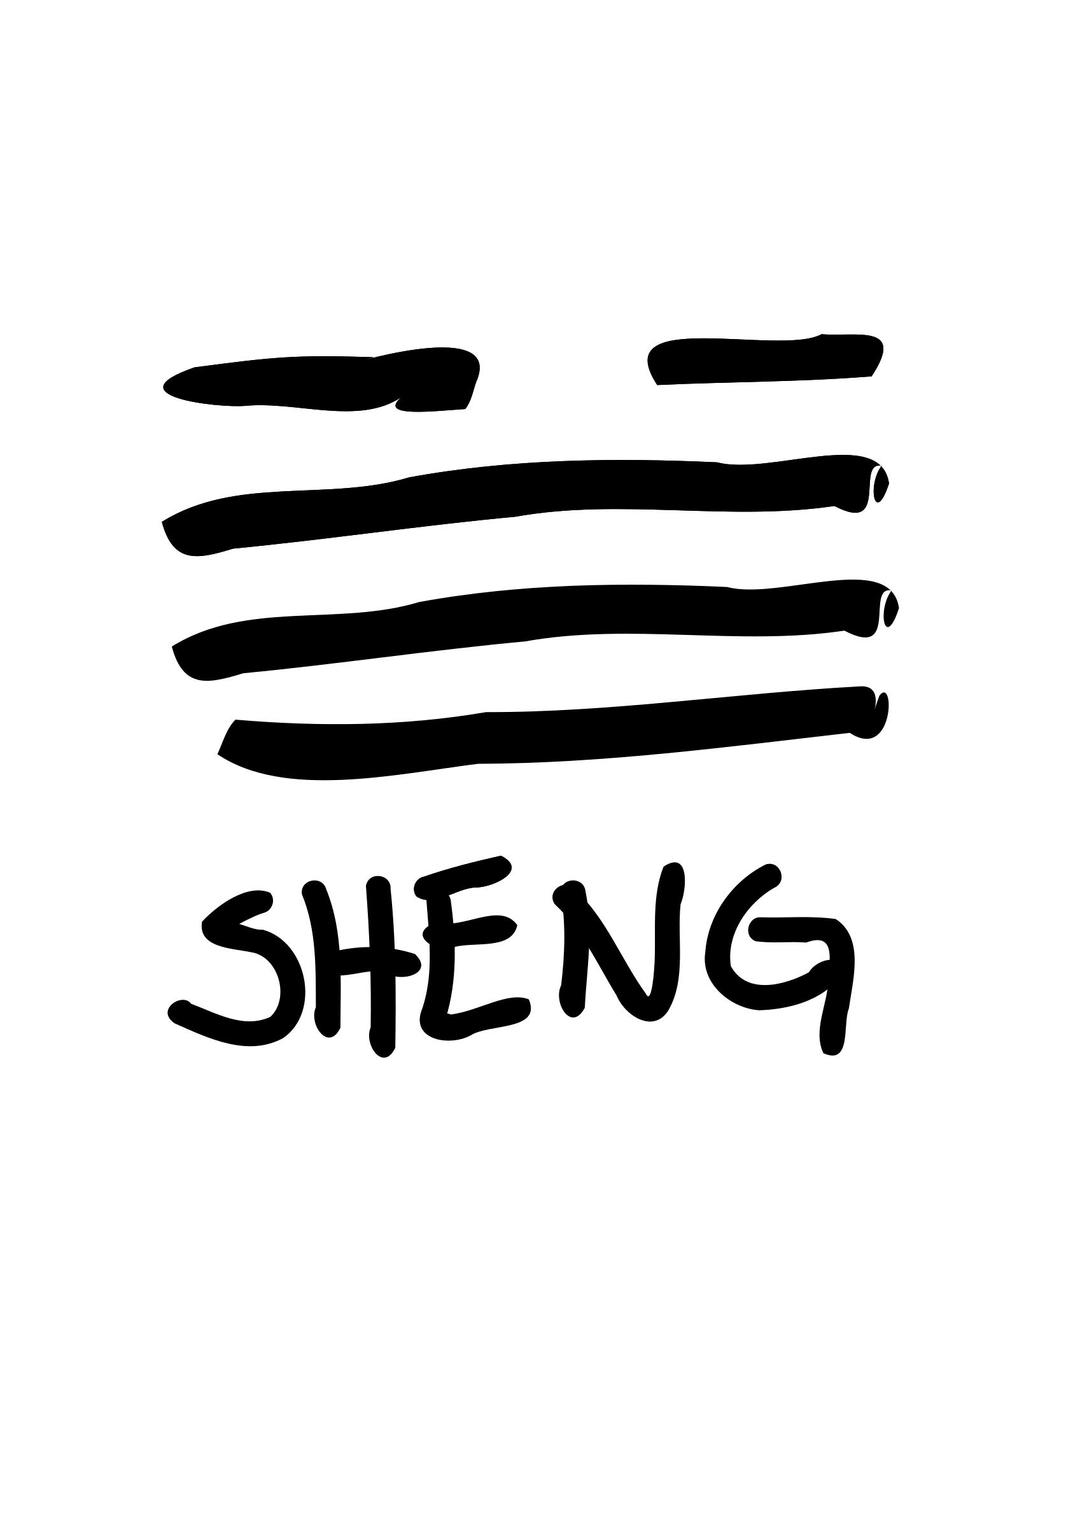 SHENG png transparent